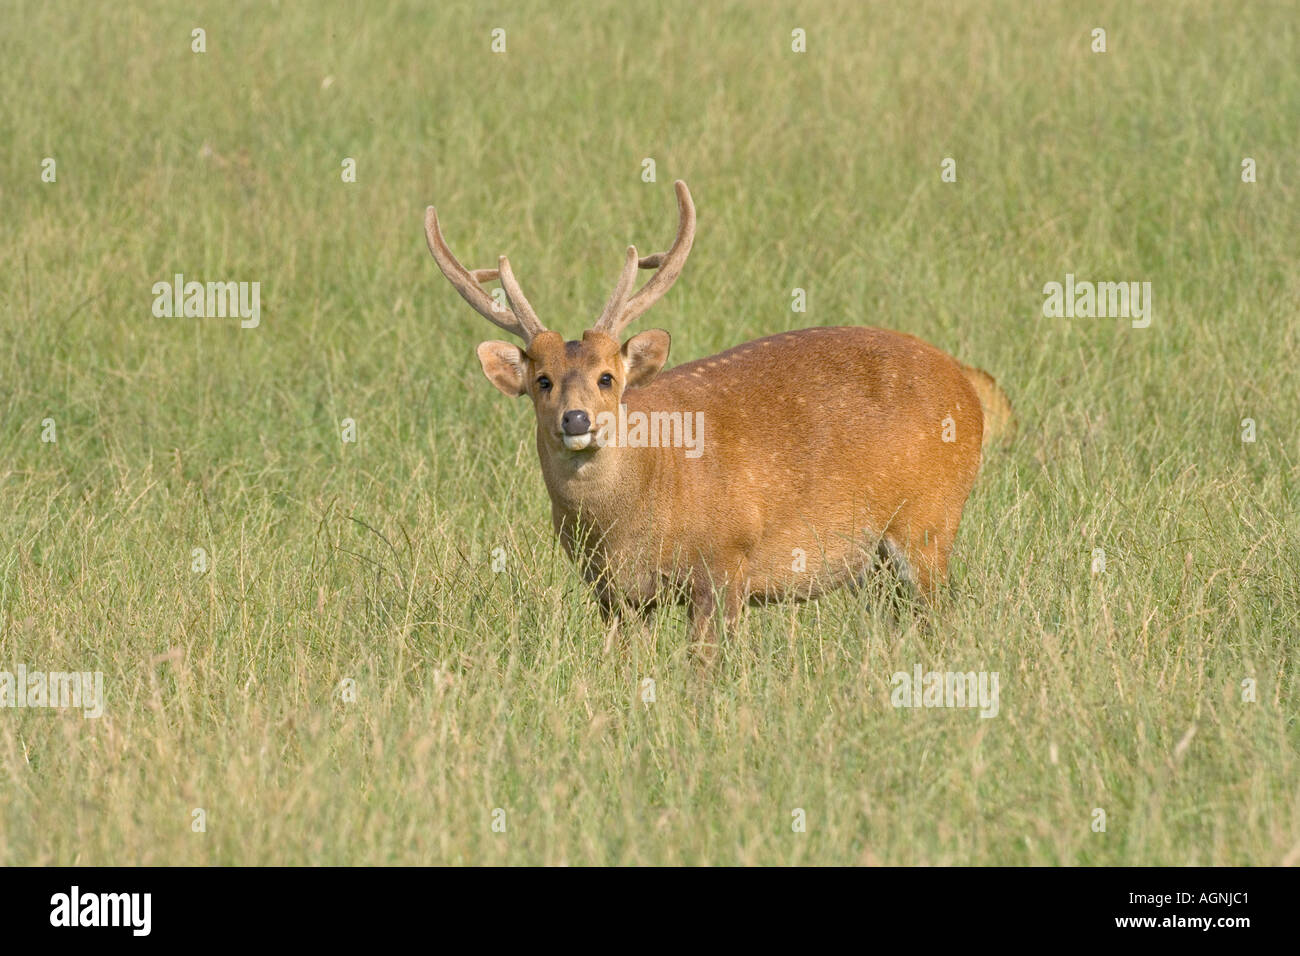 Indian Hog Deer Cervus porcinus male Stock Photo